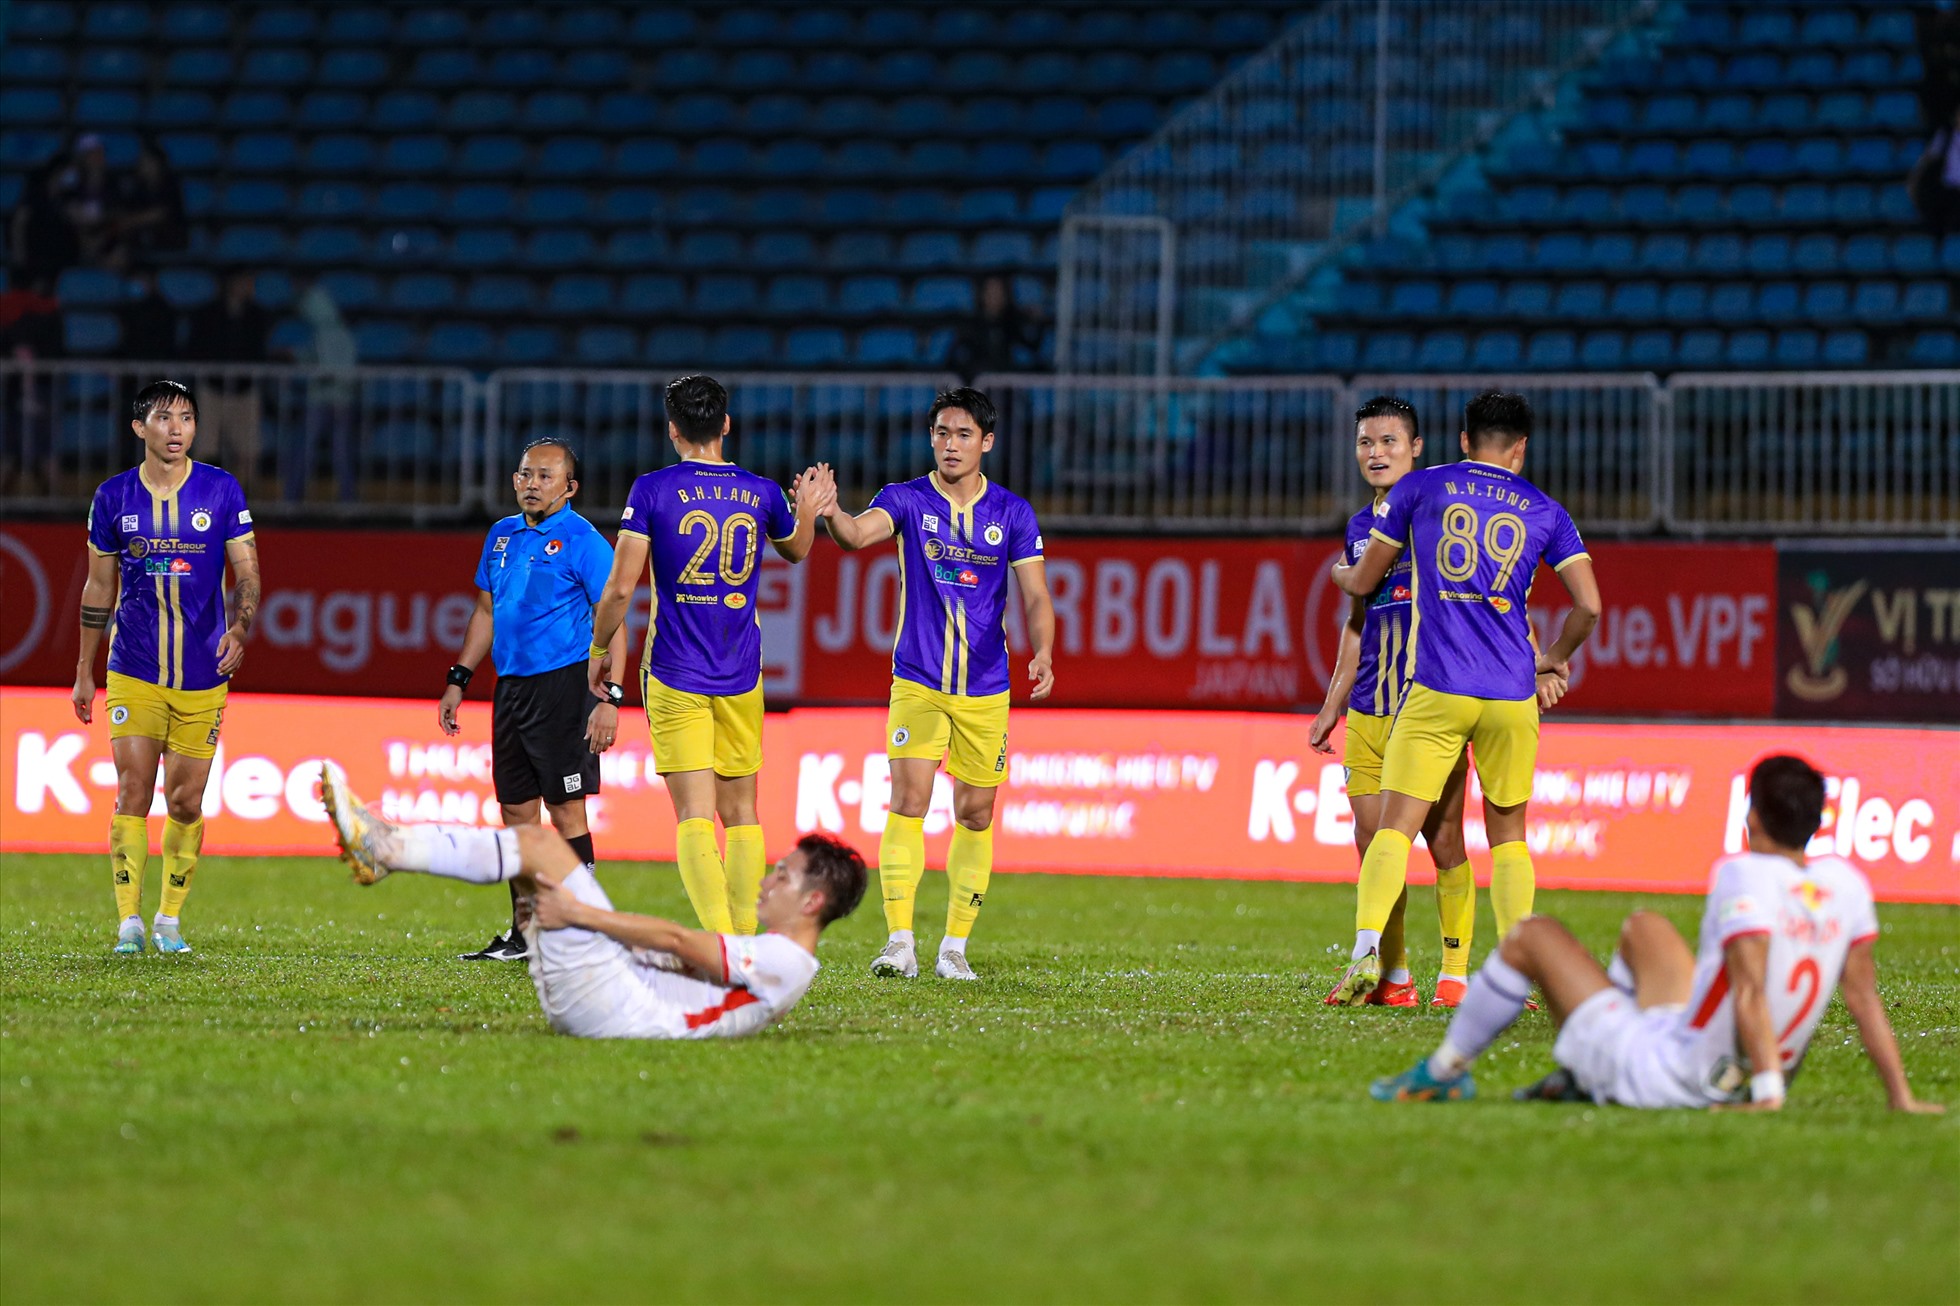 Hồng Duy, Văn Sơn thất vọng sau trận thua đối nghịch với đó là màn ăn mừng của các cầu thủ câu lạc bộ Hà Nội.